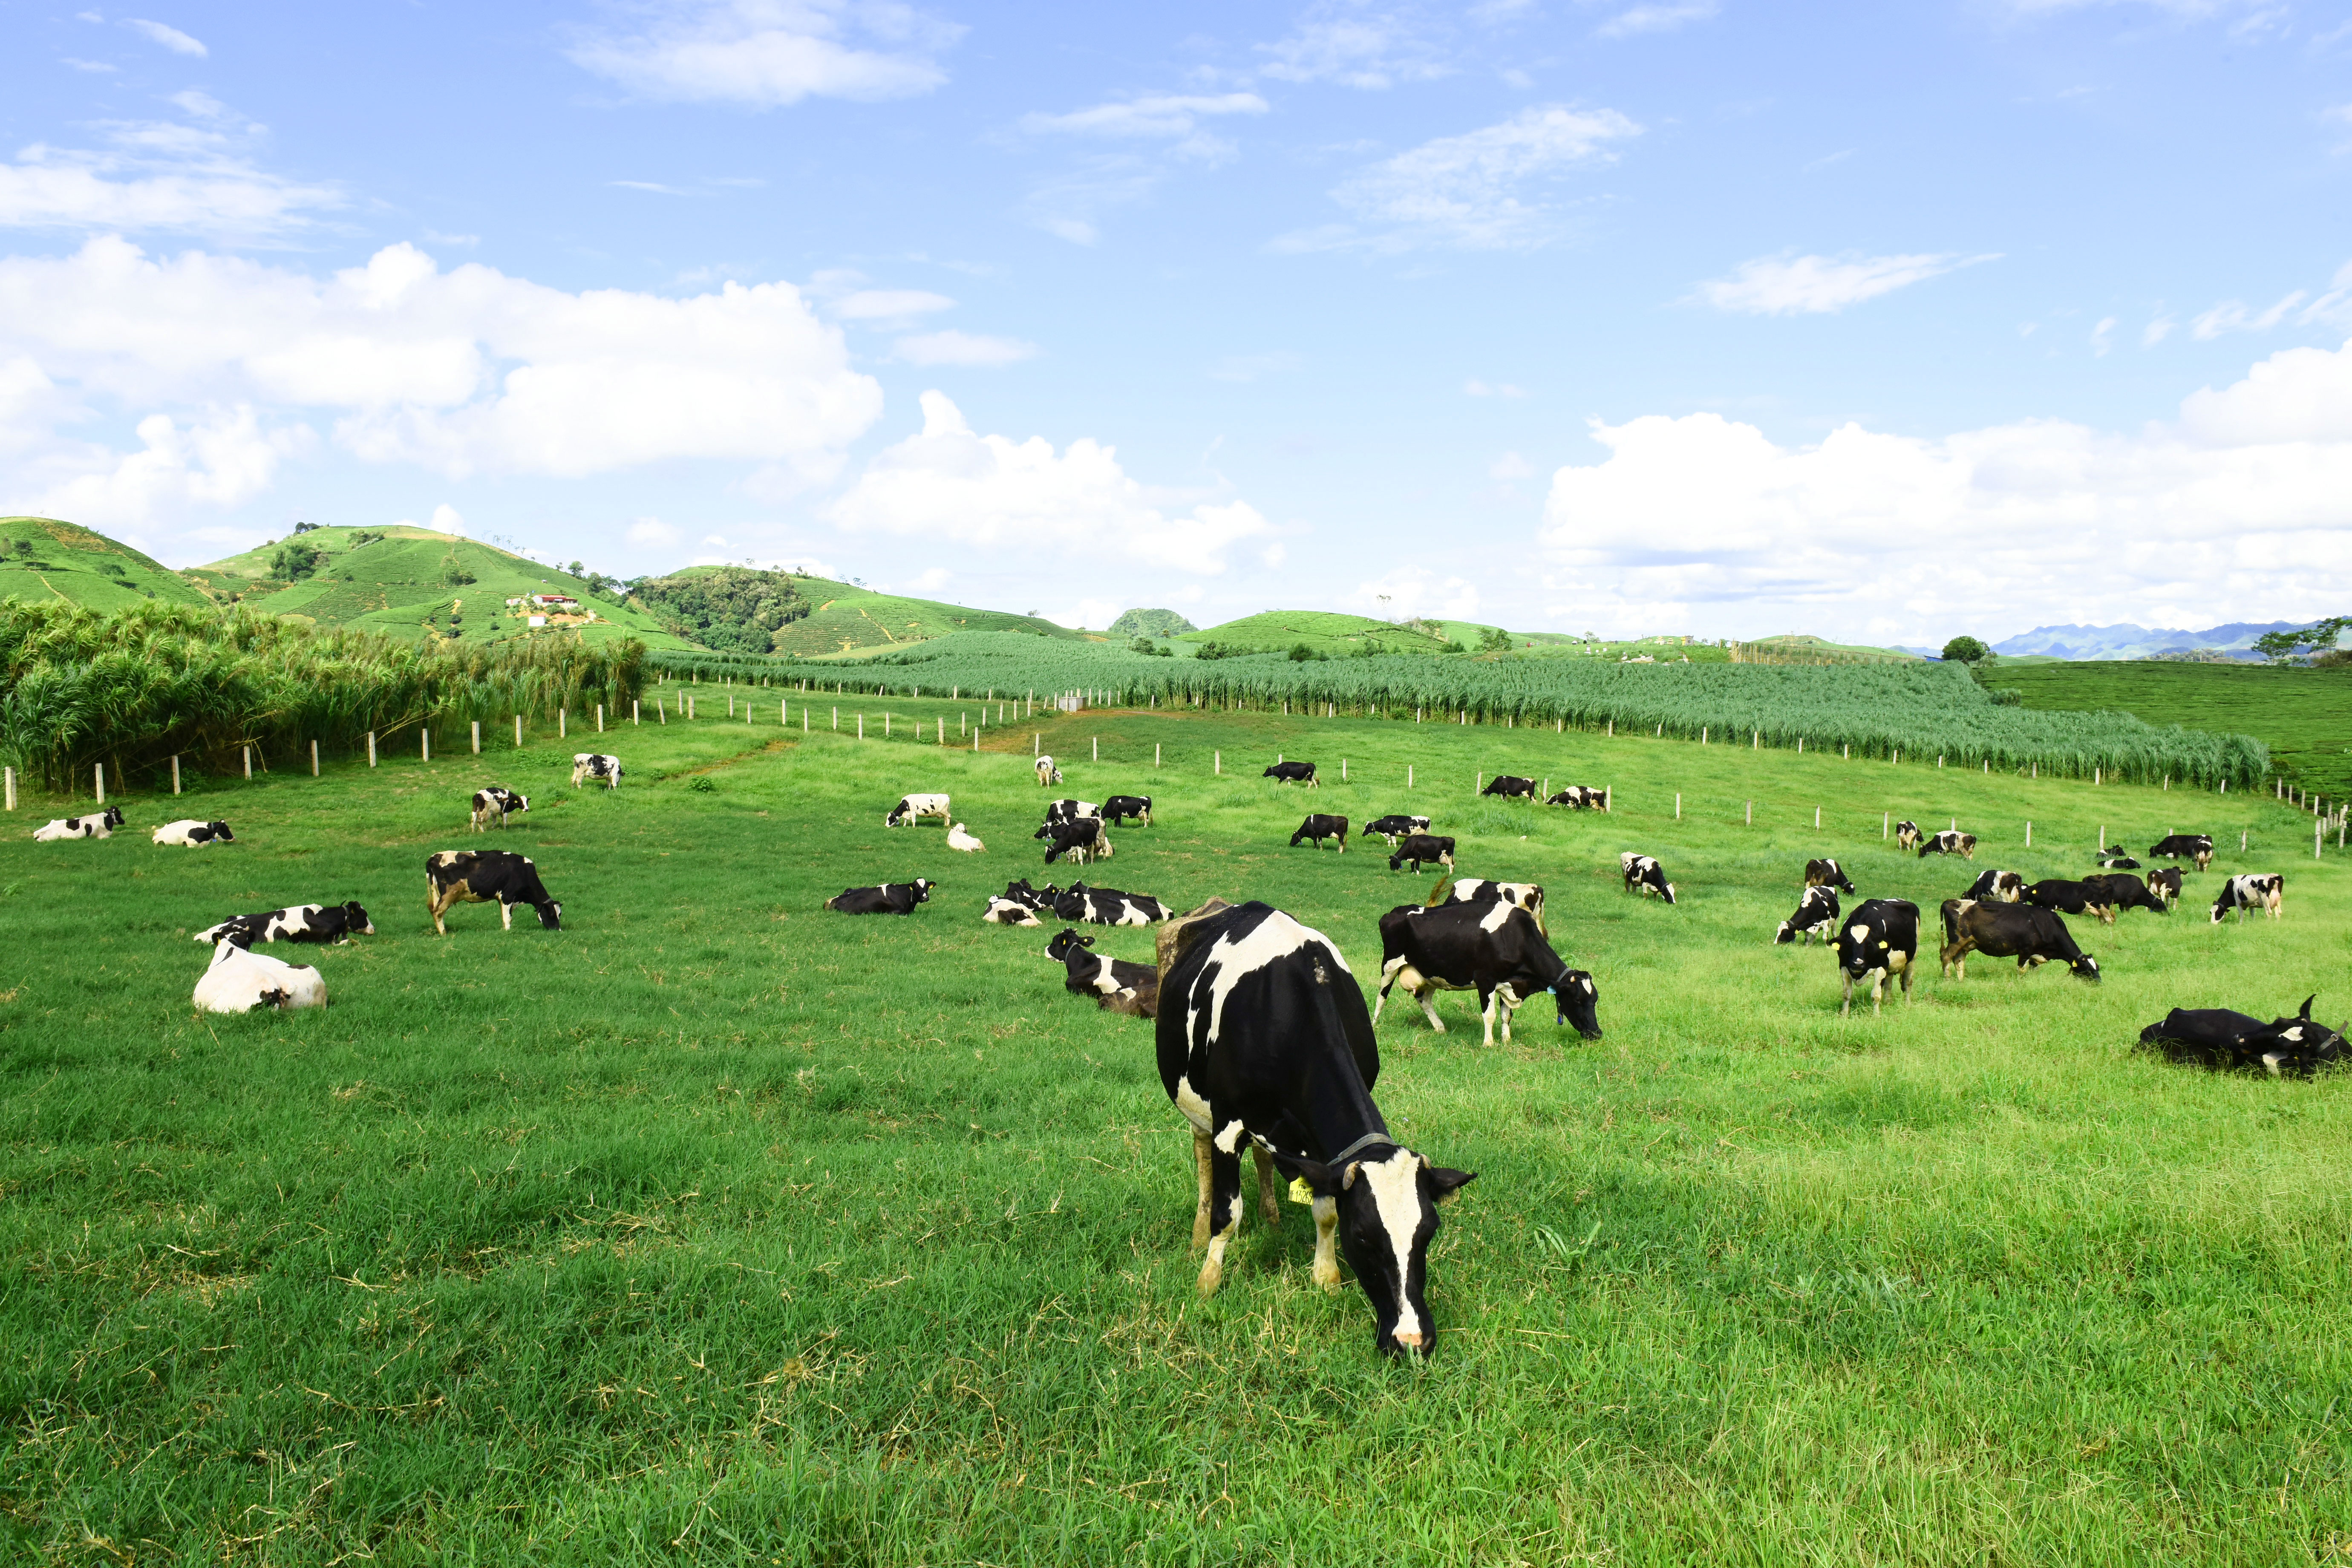 Xã Phú Thành Mô hình chăn nuôi bò sữa cho hiệu quả kinh tế cao